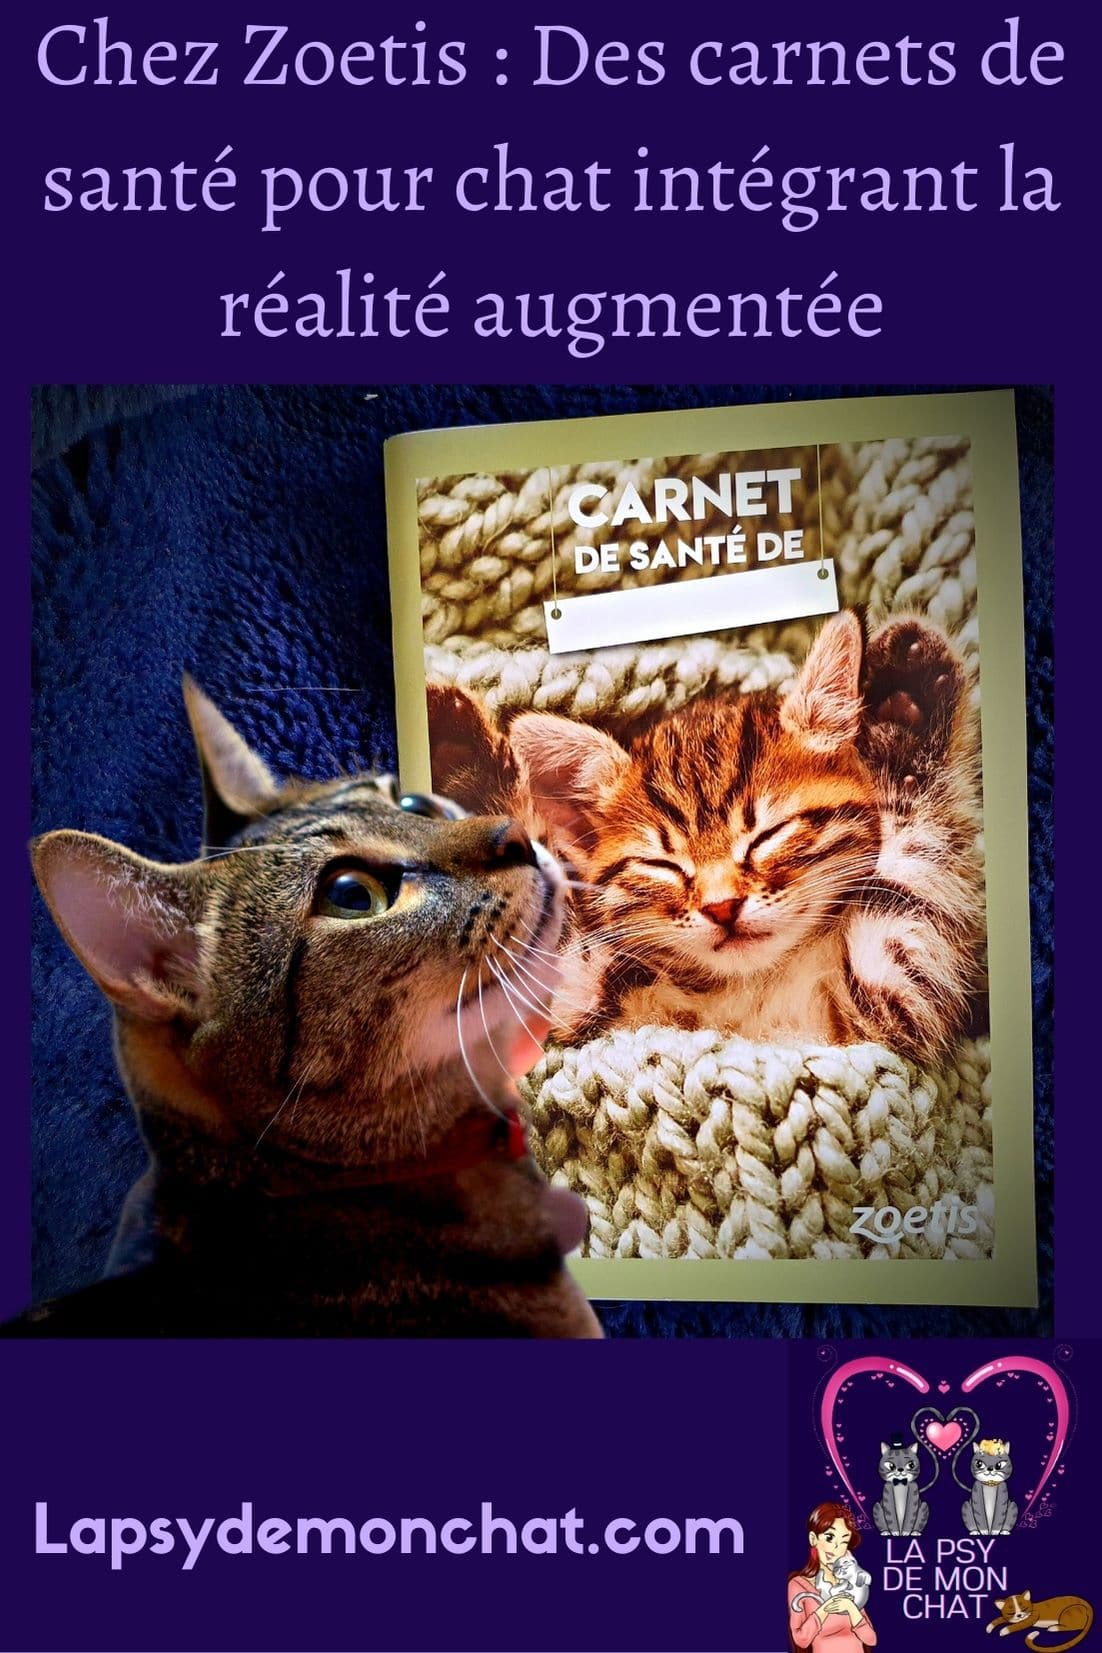 Chez Zoetis Des carnets de santé pour chat intégrant la réalité augmentée - pinterest